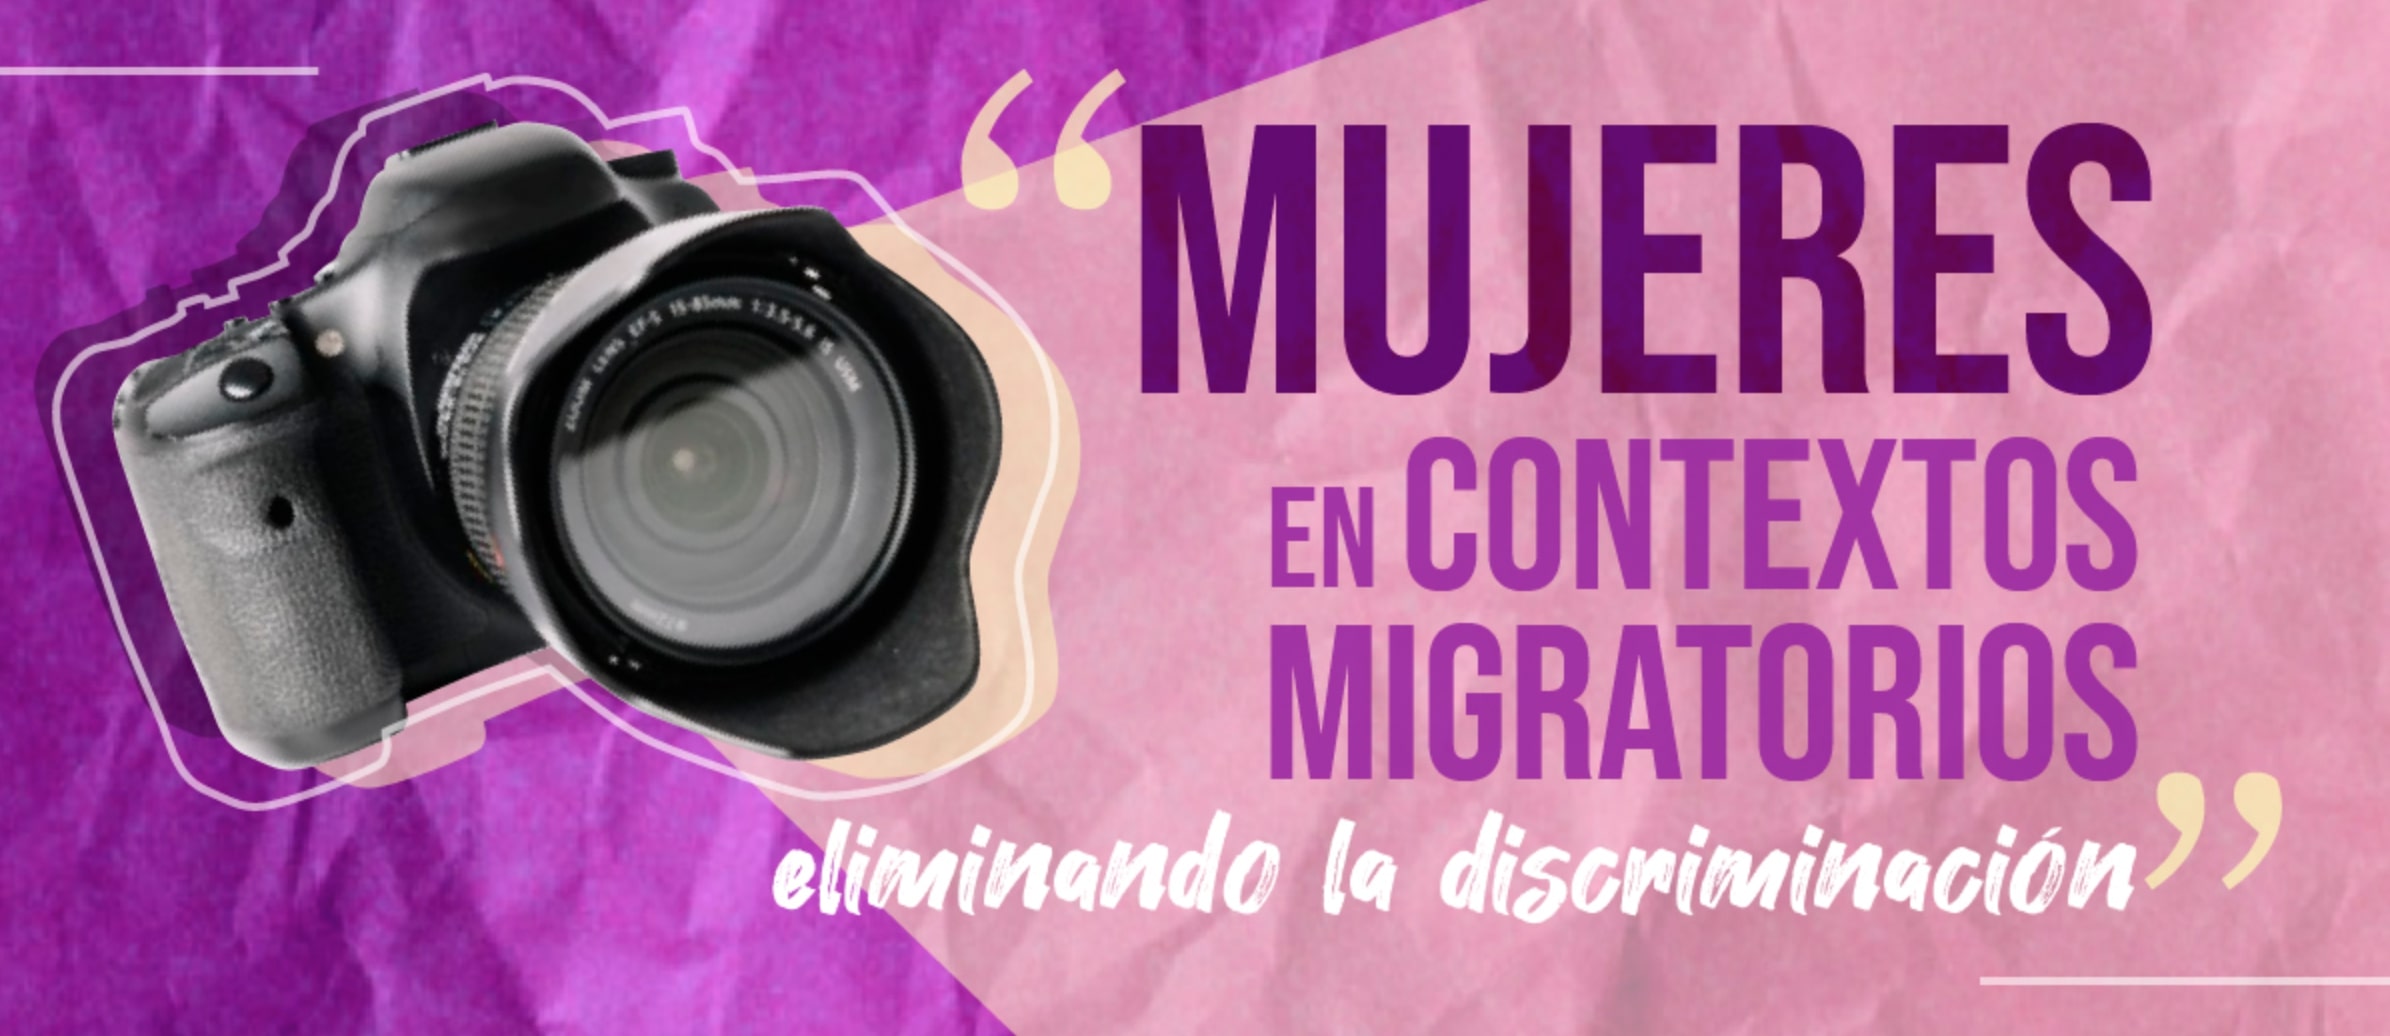 Mujeres en contextos migratorios, eliminando la  discriminación